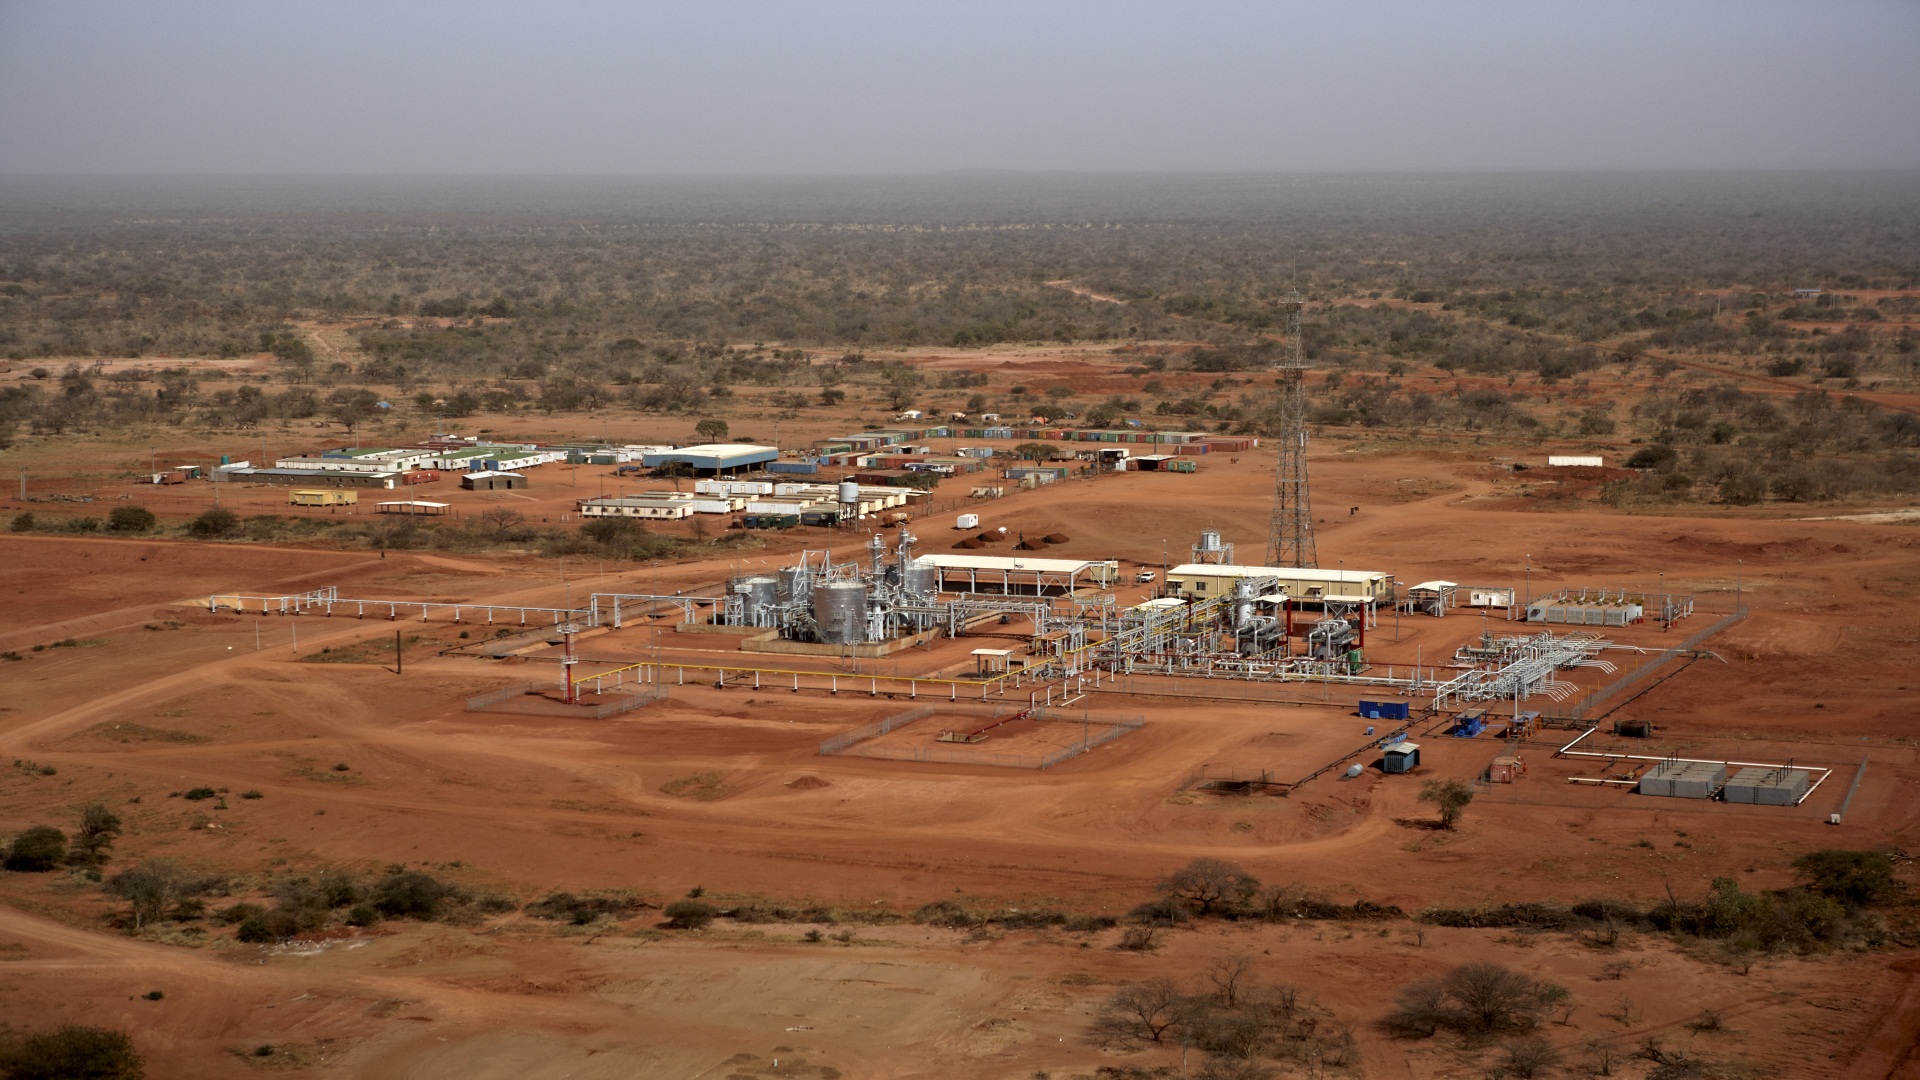 【蘇丹樣本】                    蘇丹124區塊，第一個建成的千萬噸級大油田，徹底改變了蘇丹石油工業面貌。項目投產日，也就是每年的8月31日，被確定為蘇丹的石油節。隨后，又陸續開發了蘇丹37區、蘇丹6區項目，幫助蘇丹人民圓了石油夢。                                     隱藏文字說明